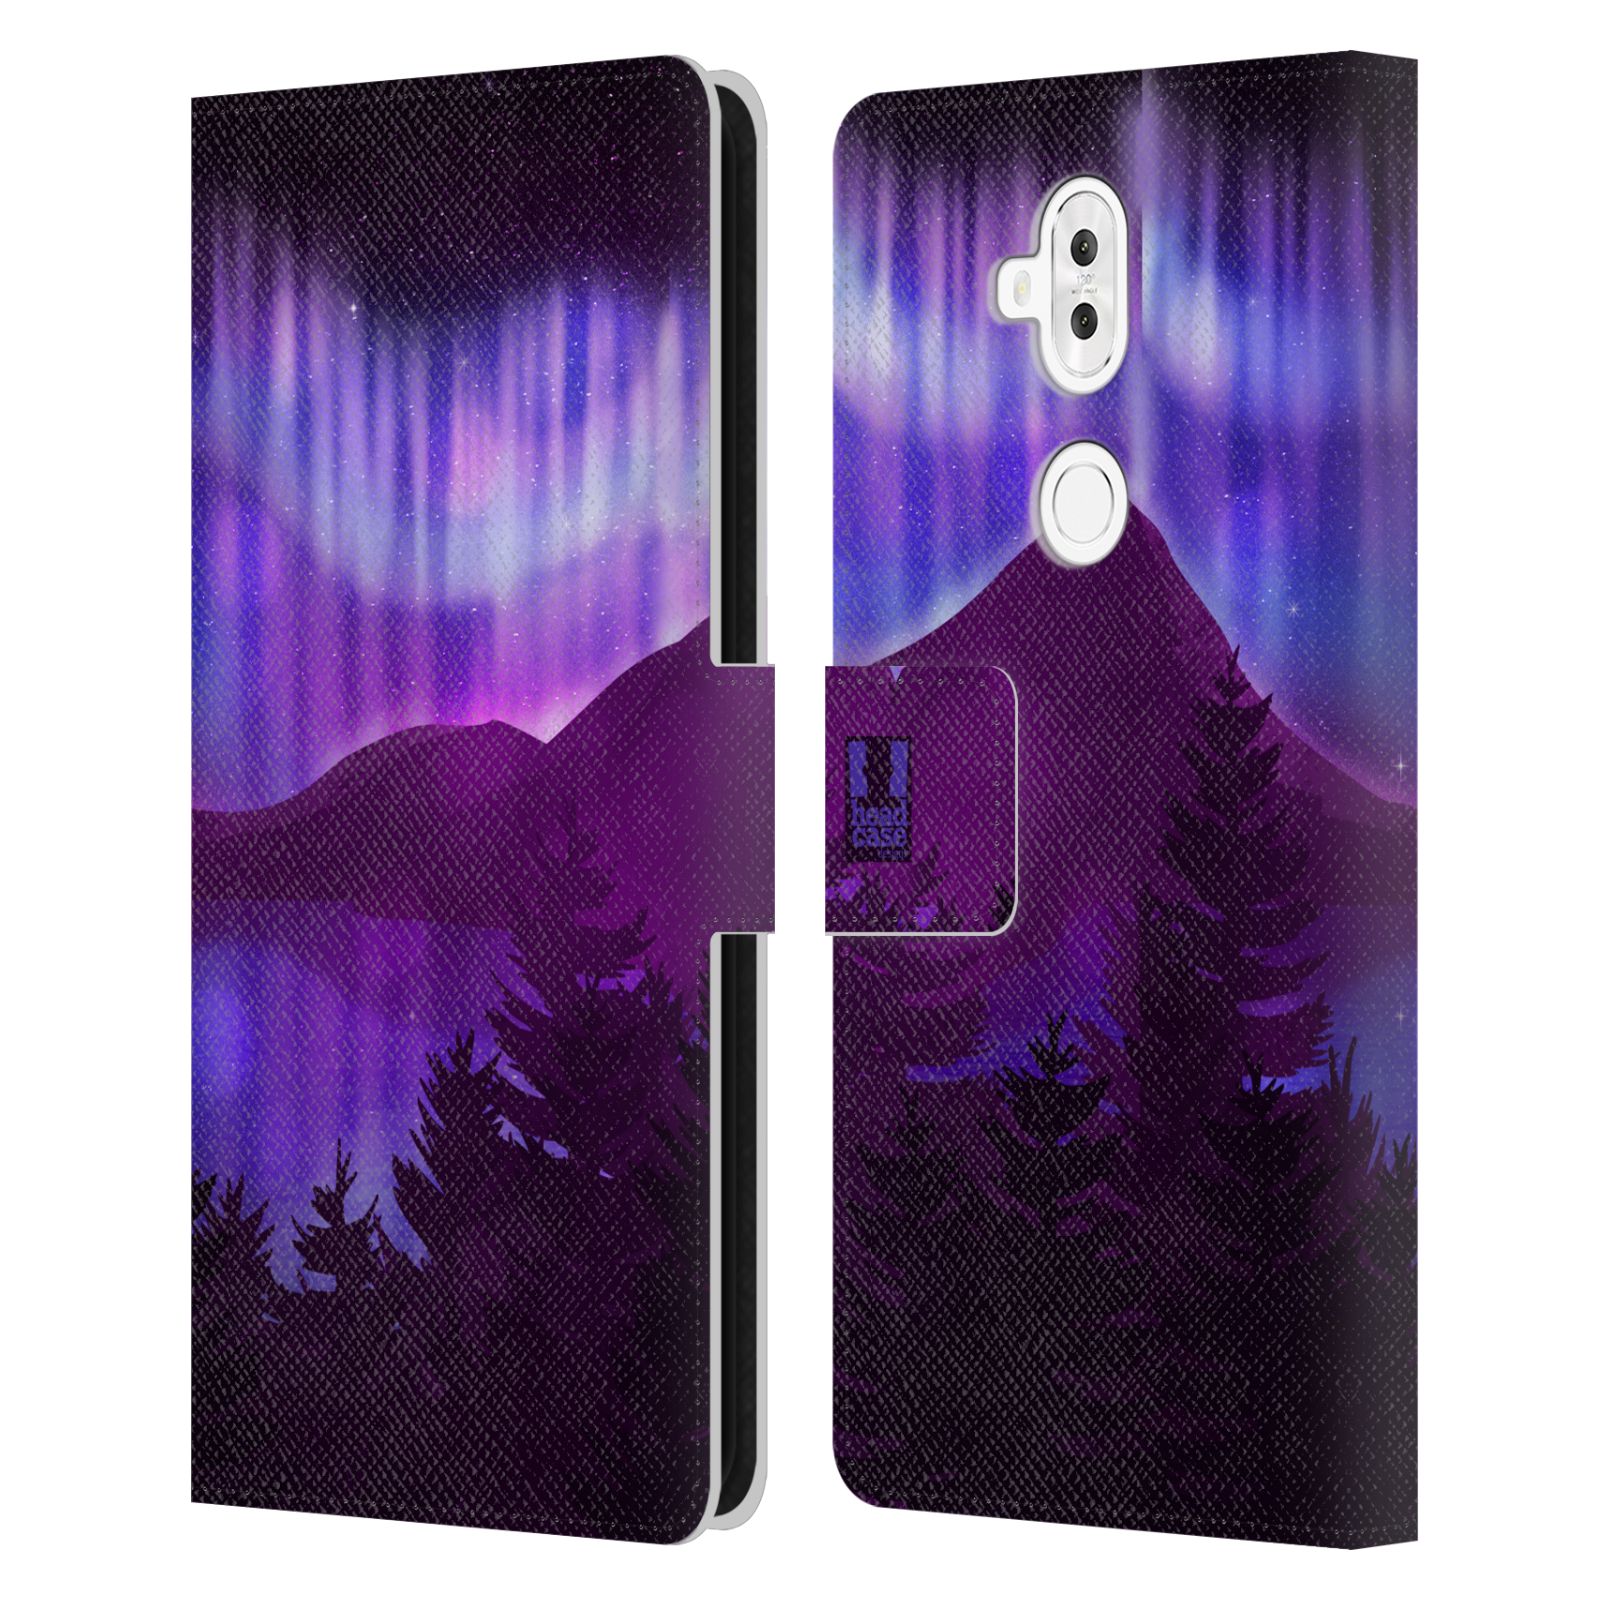 Pouzdro na mobil Asus Zenfone 5 Lite ZC600KL  - HEAD CASE - Hory a lesy fialový odstín